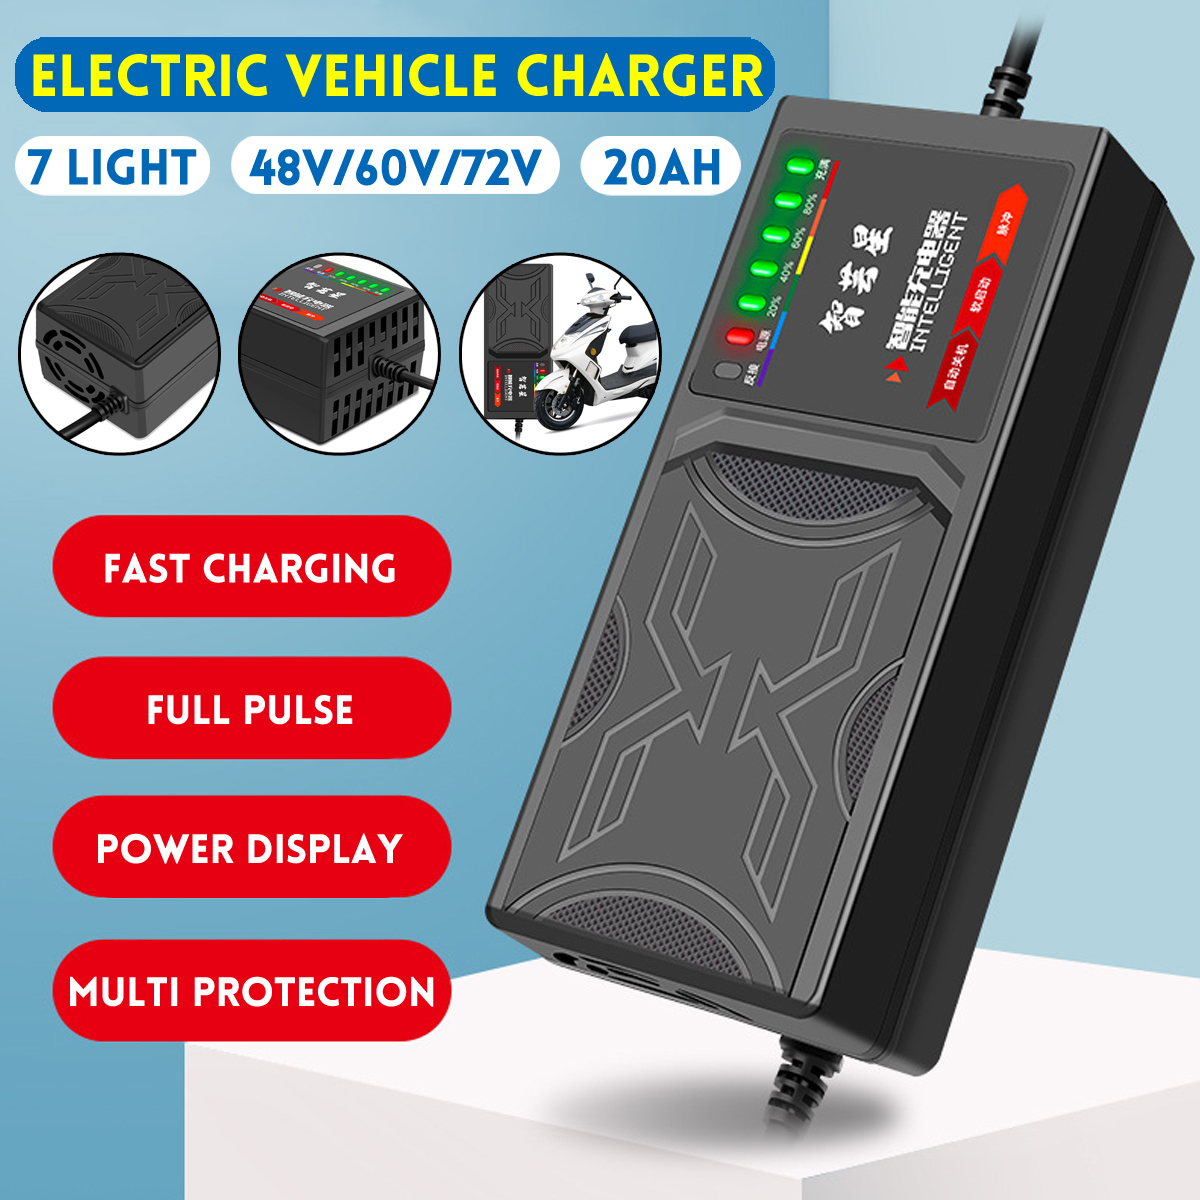 48V 20AH/60V 20AH/72V 20AH 7-Light Electric Vehicle Battery Charger Adapter